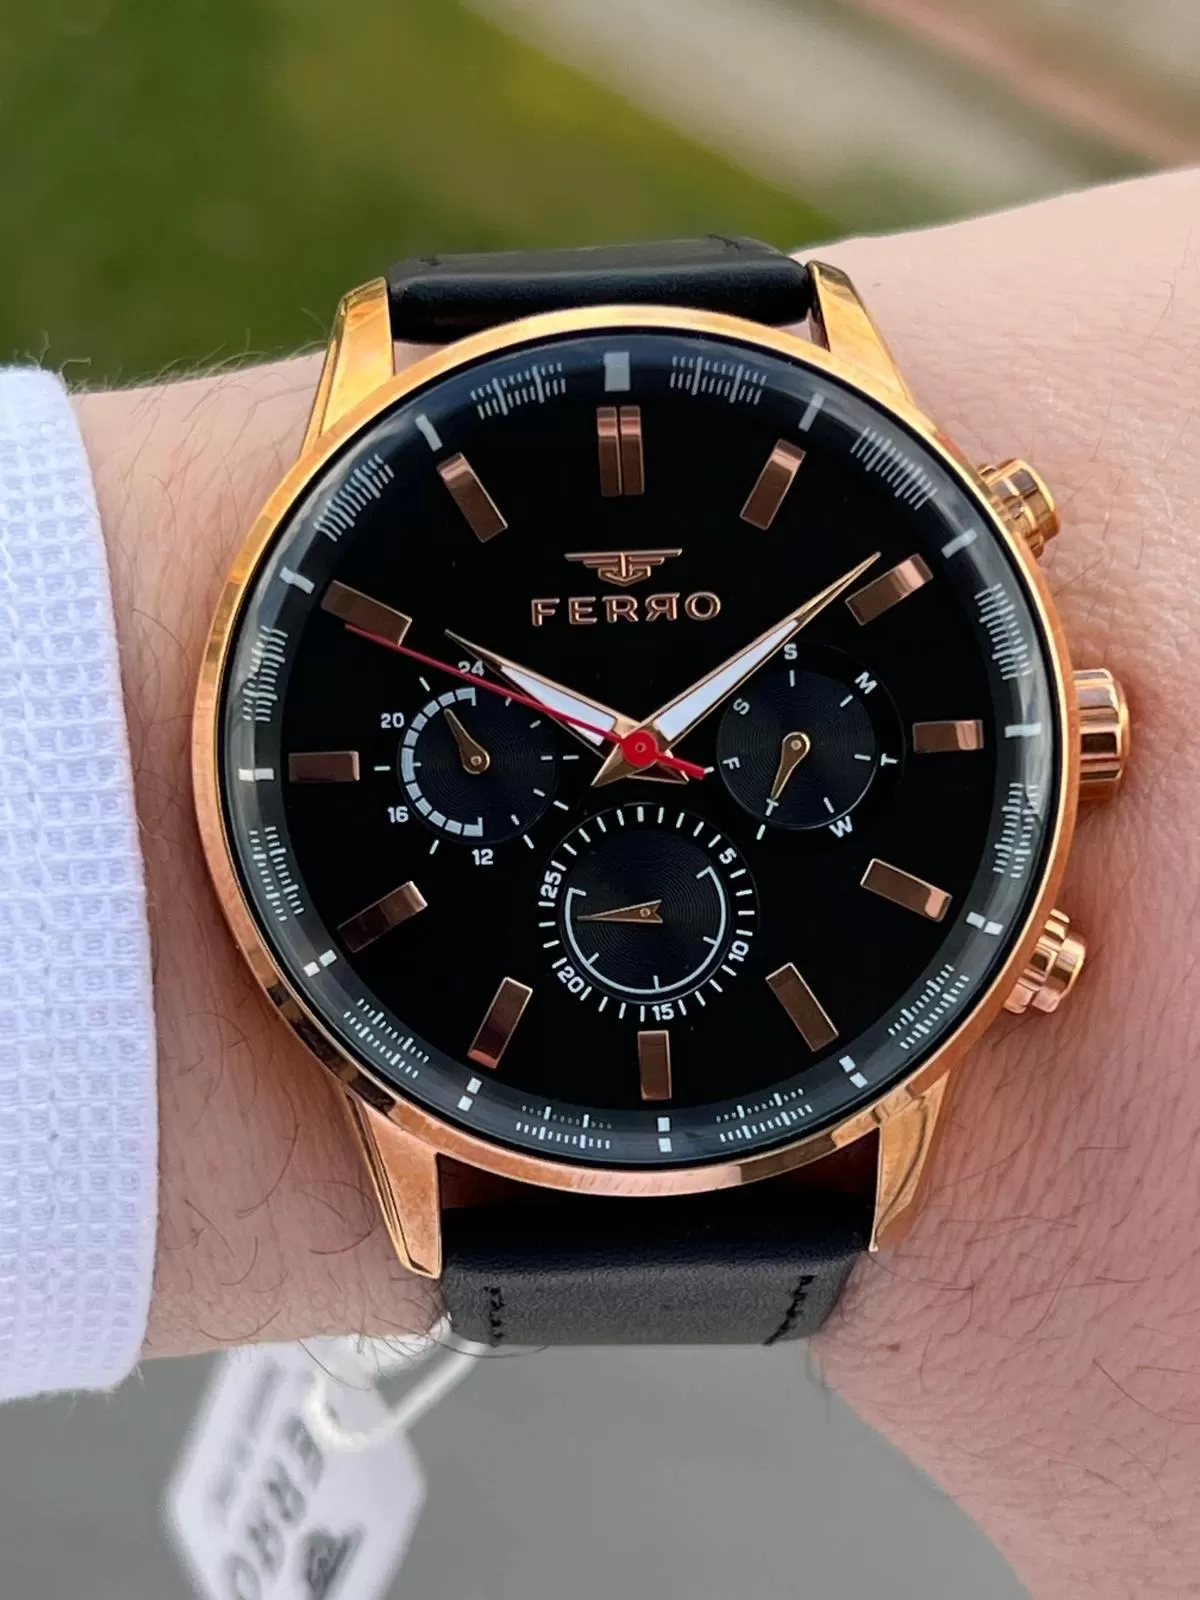 Ferro Takvimli+İç Fonksiyonları Aktif Siyah Renk Deri Kordon 3 Atm Erkek Kol Saat EFM1108-R